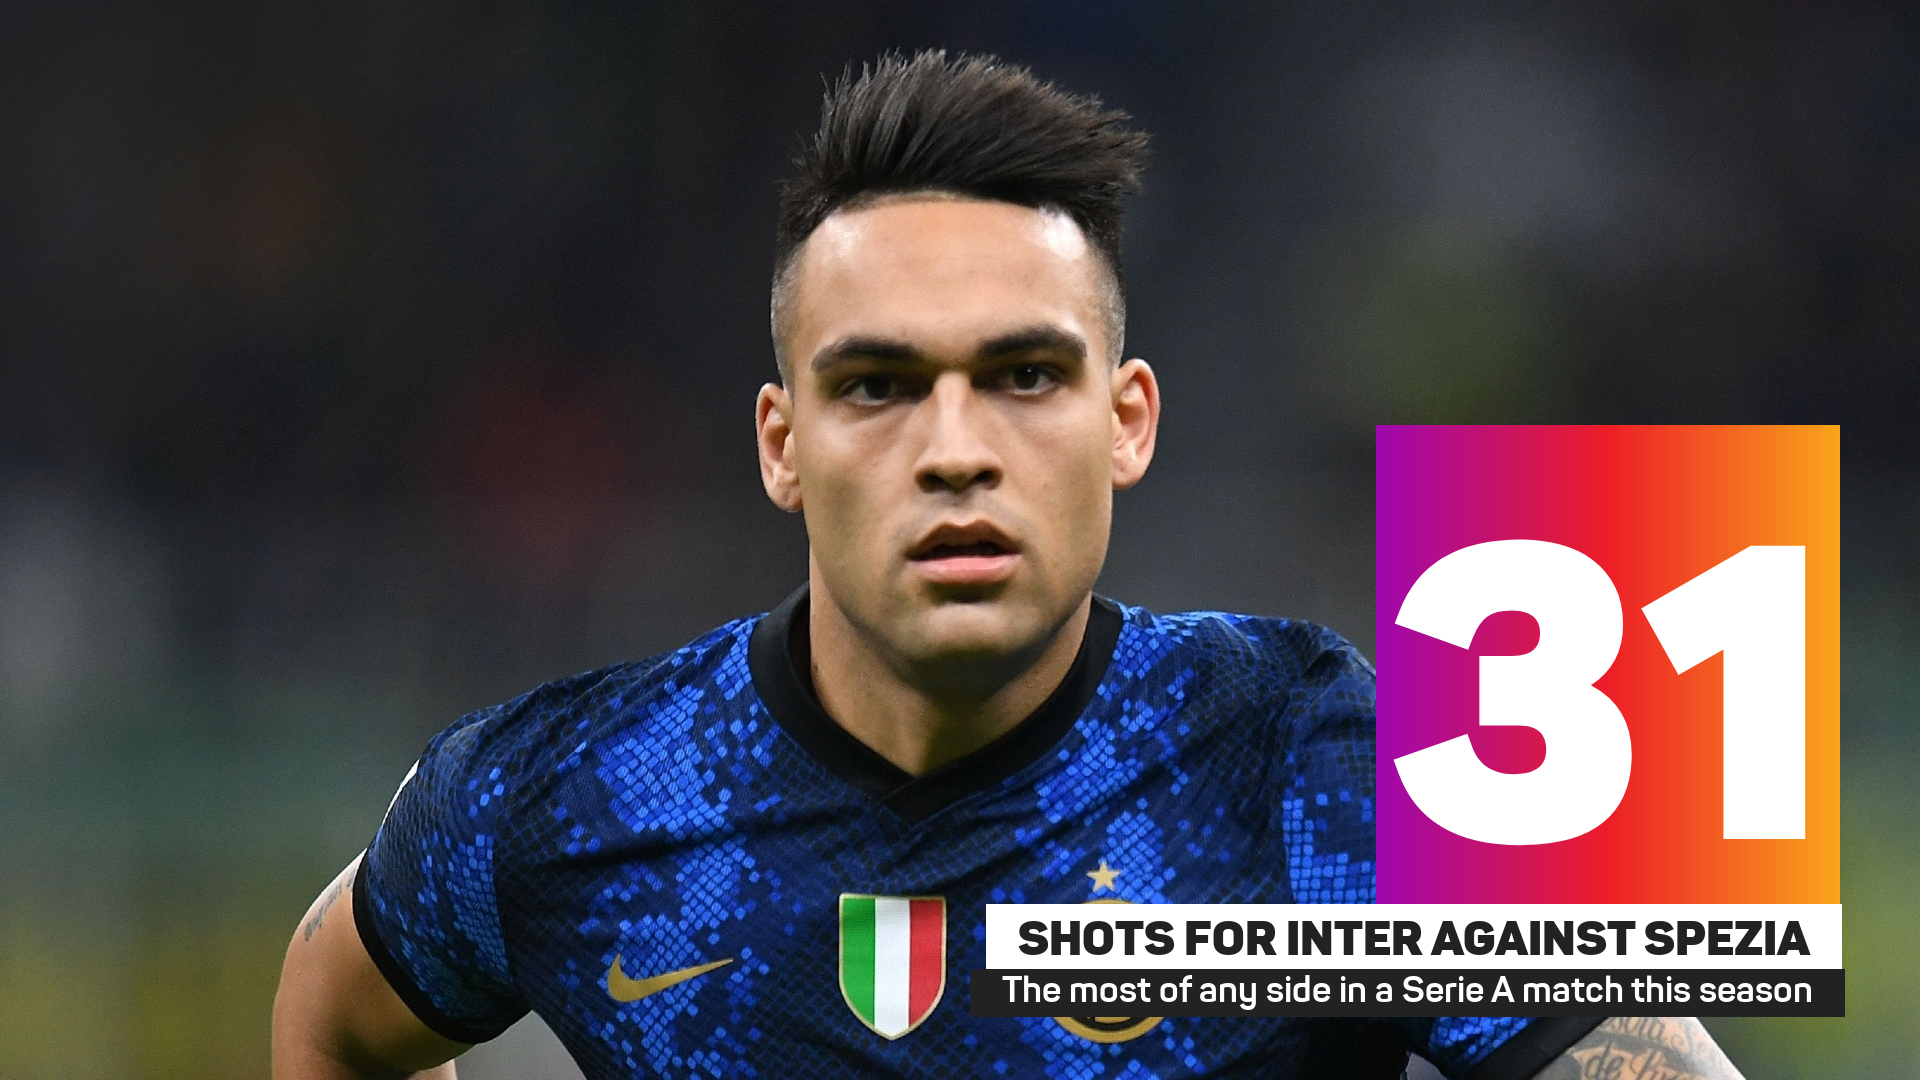 Inter had 31 shots against Spezia